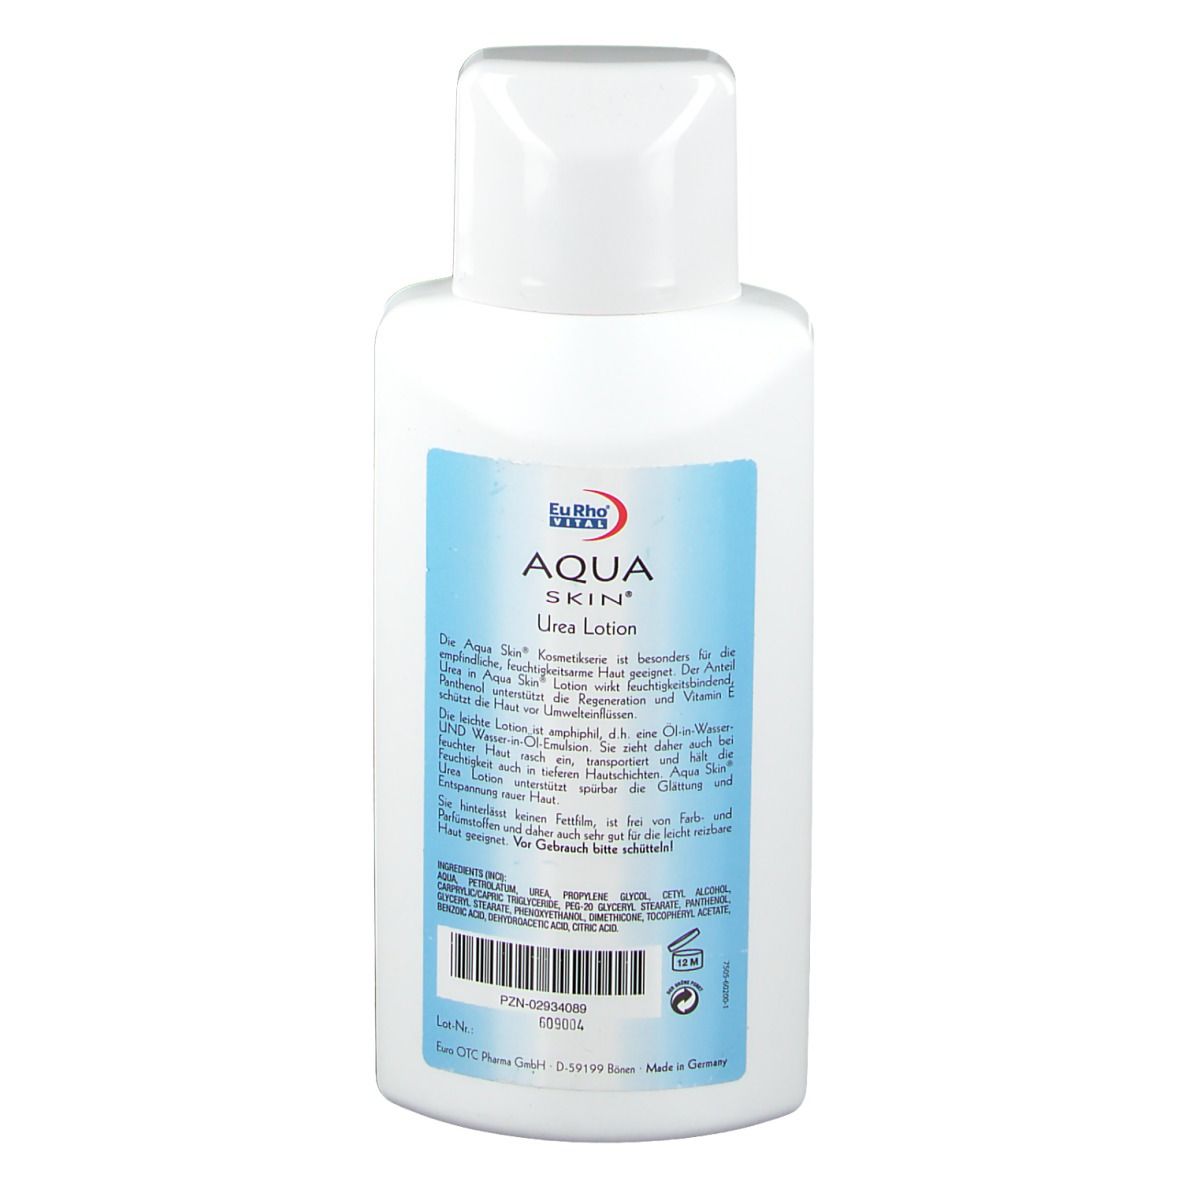 Aqua Skin® Urea Lotion